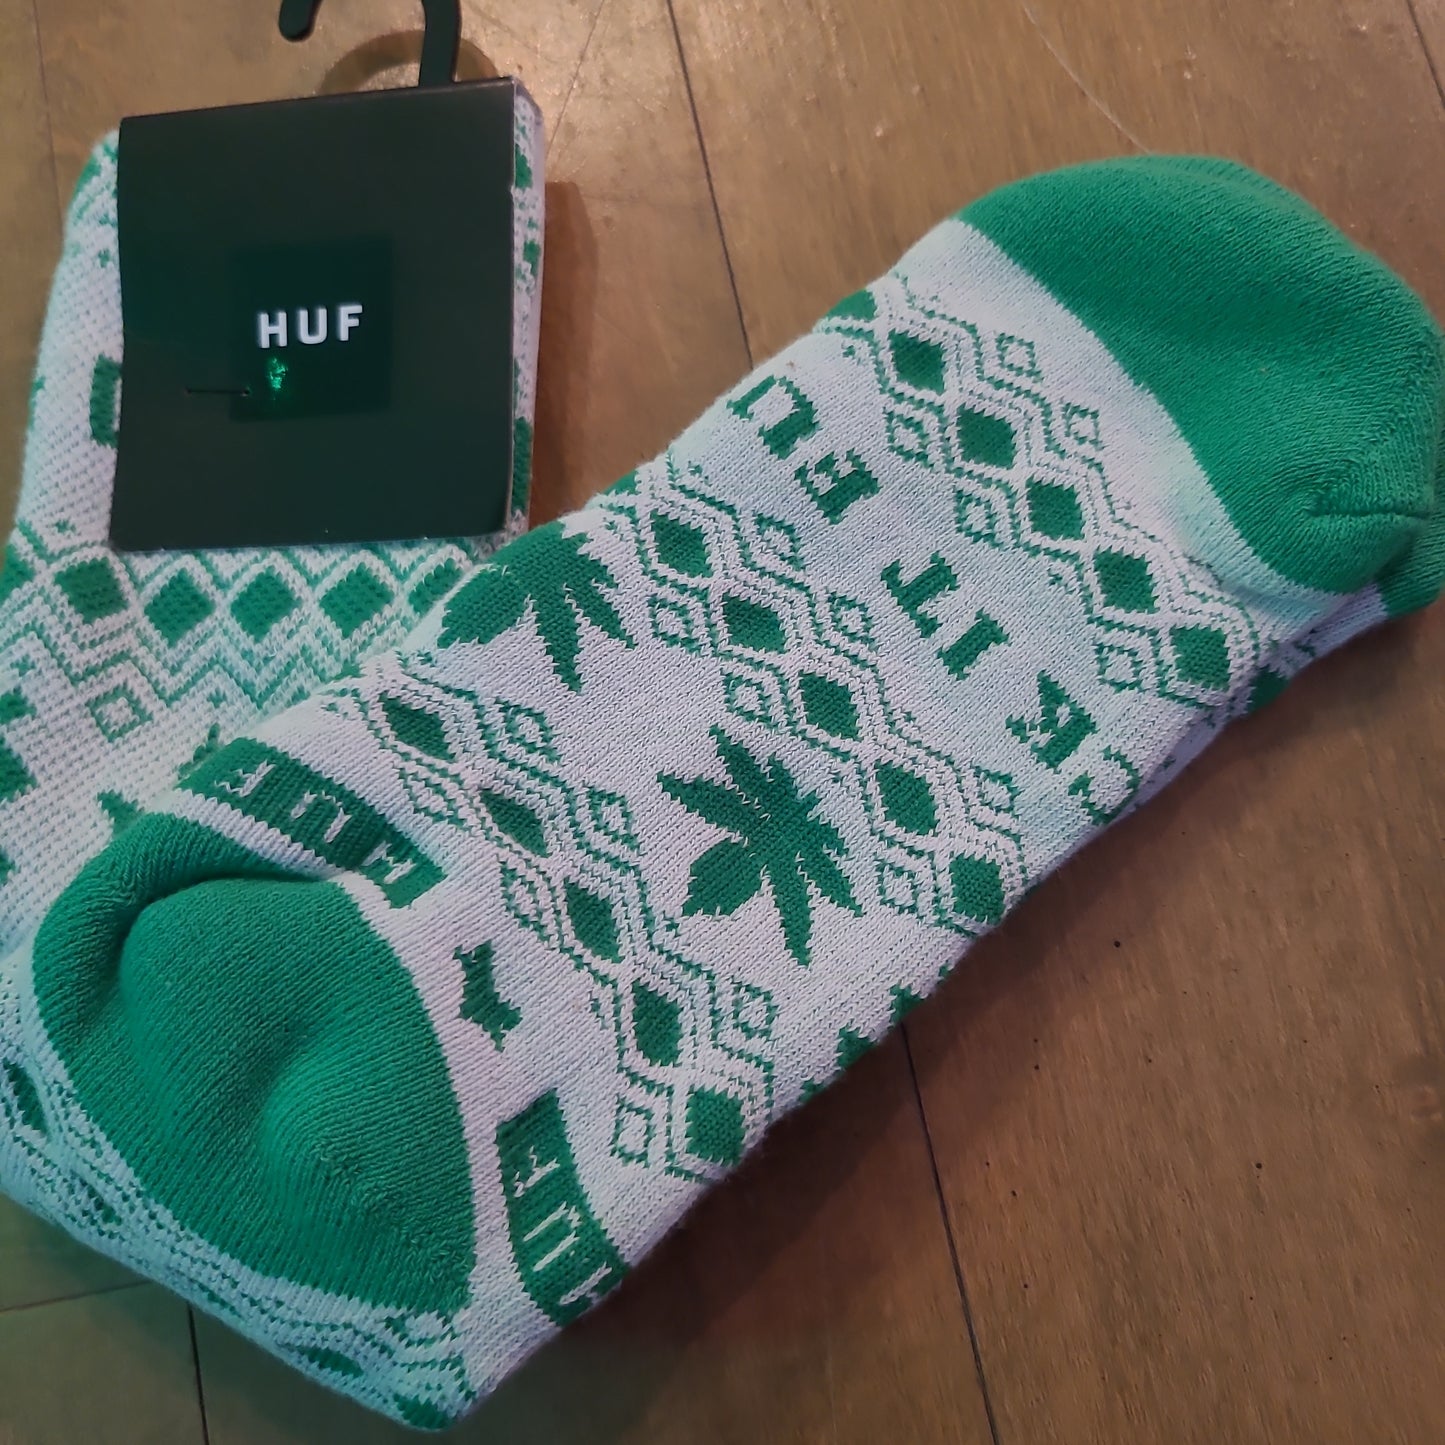 HUF - Festivous Socks